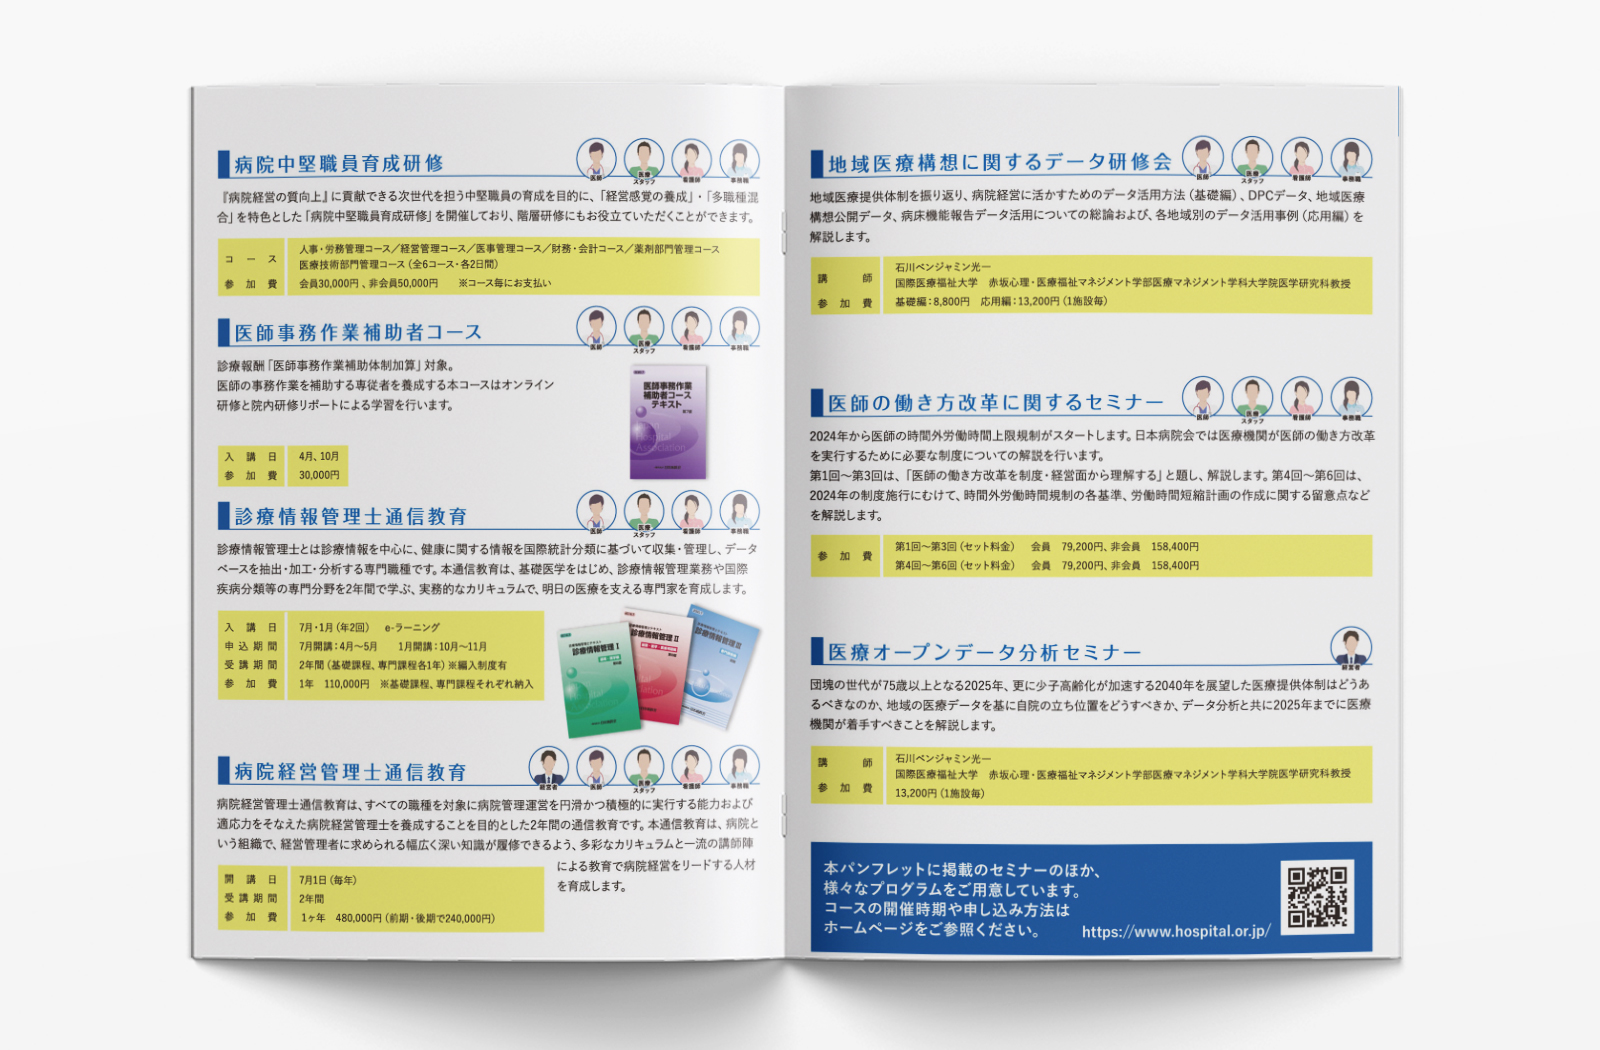 日本病院会 様のパンフレットデザイン